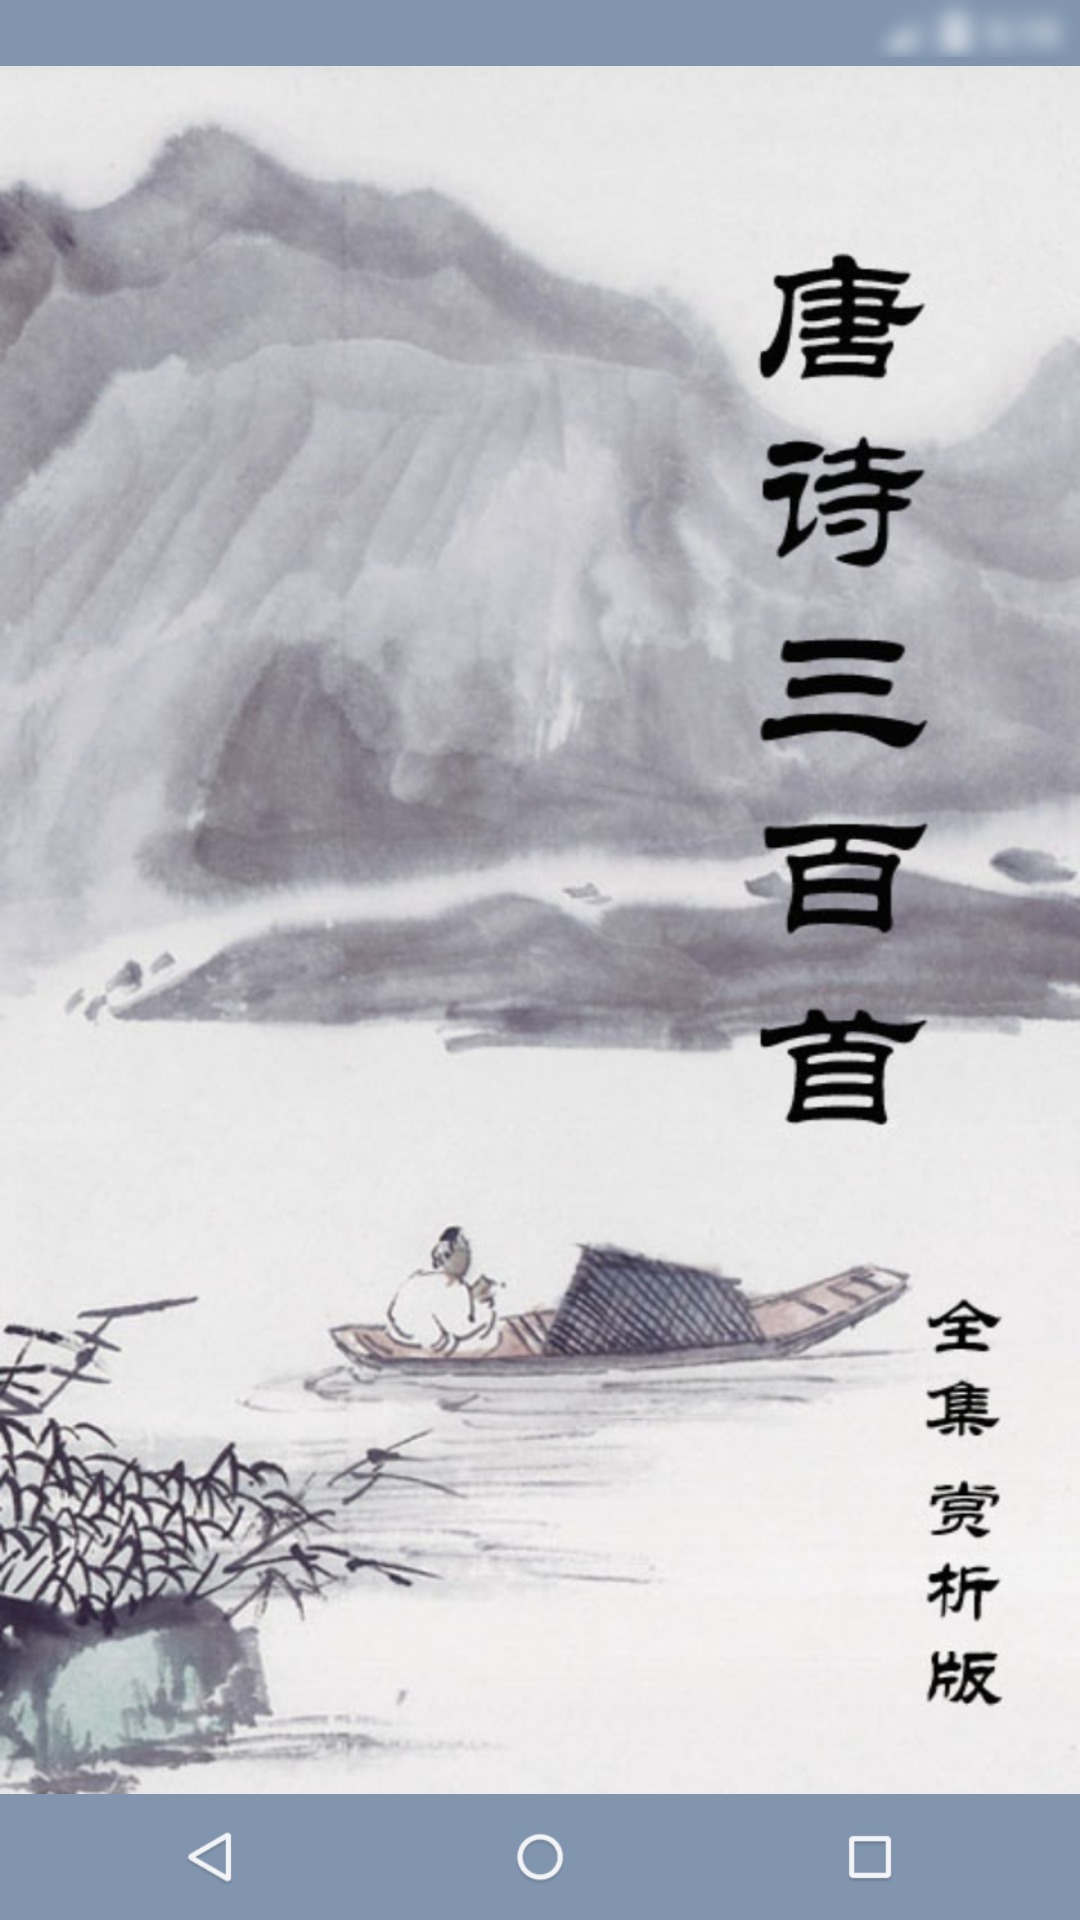 唐诗三百首赏析之五绝：最熟悉的诗歌，却最有行云流水般的清新自然